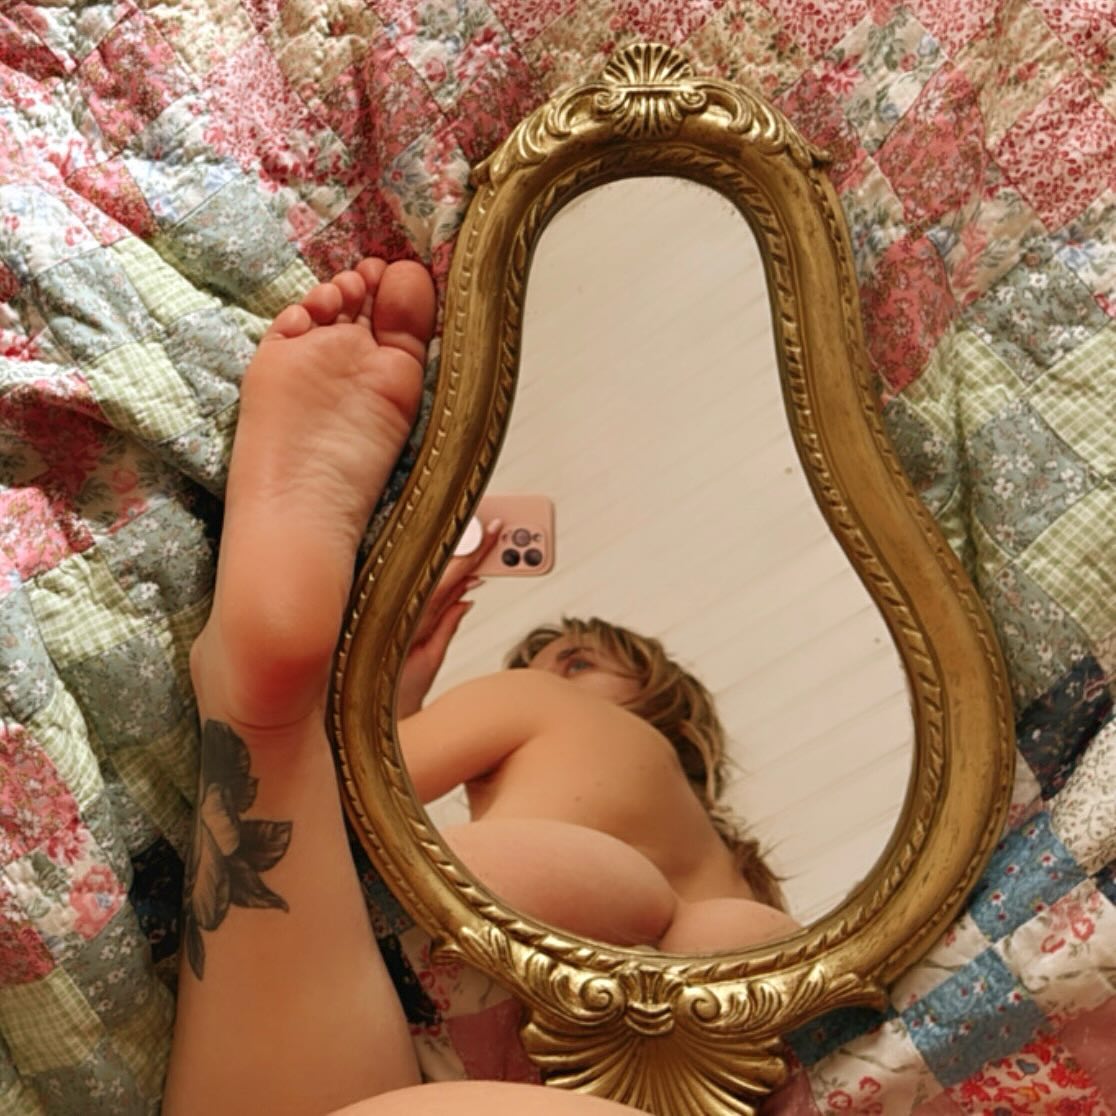 ✨Le miroir enchanté ✨

Poème de Tristan L’Hermite

🪞✨